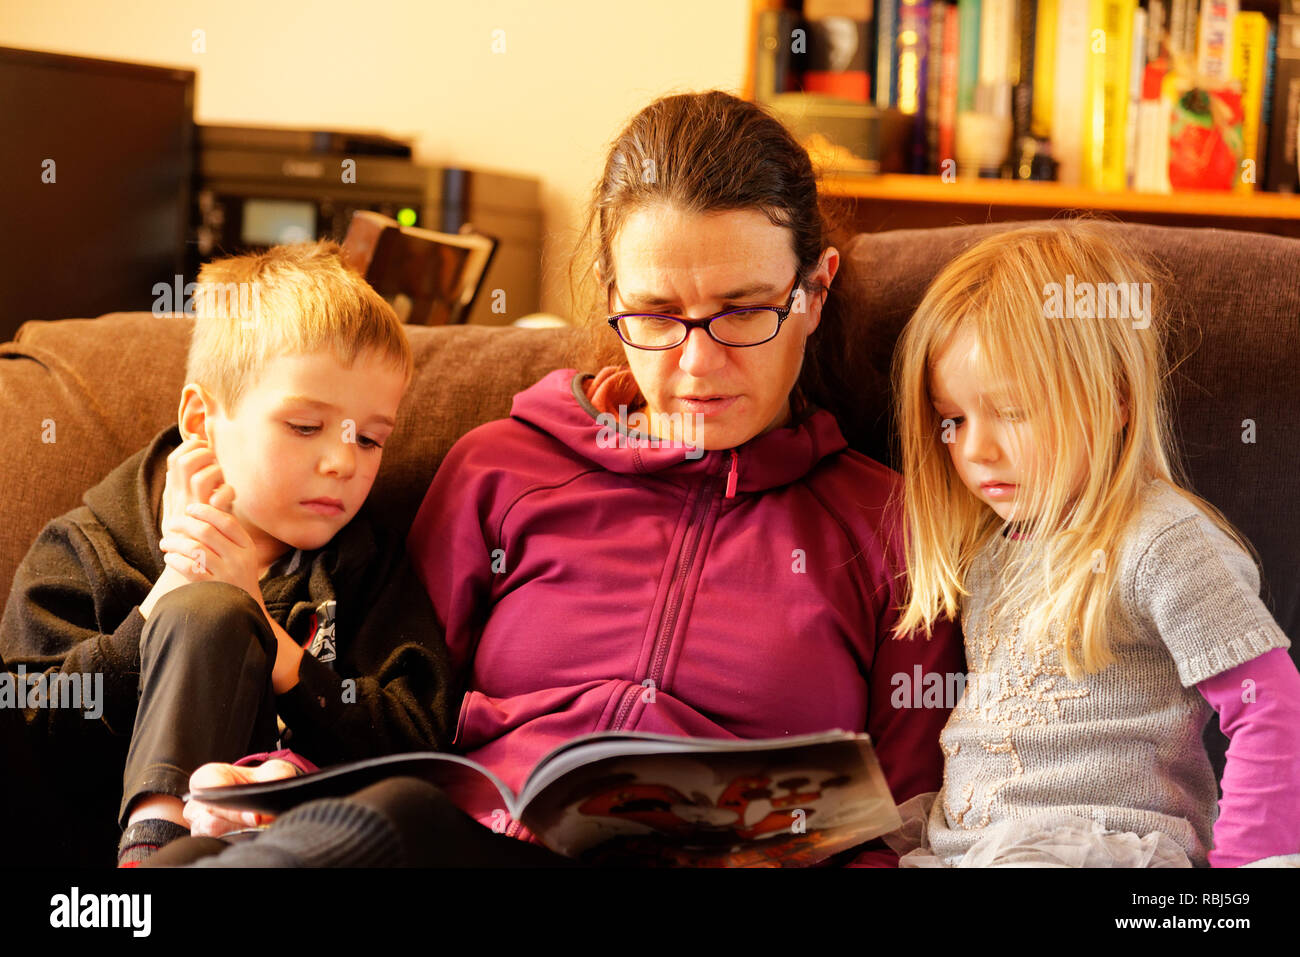 Une maman s'assit sur un canapé-lit un livre à ses deux jeunes enfants Banque D'Images